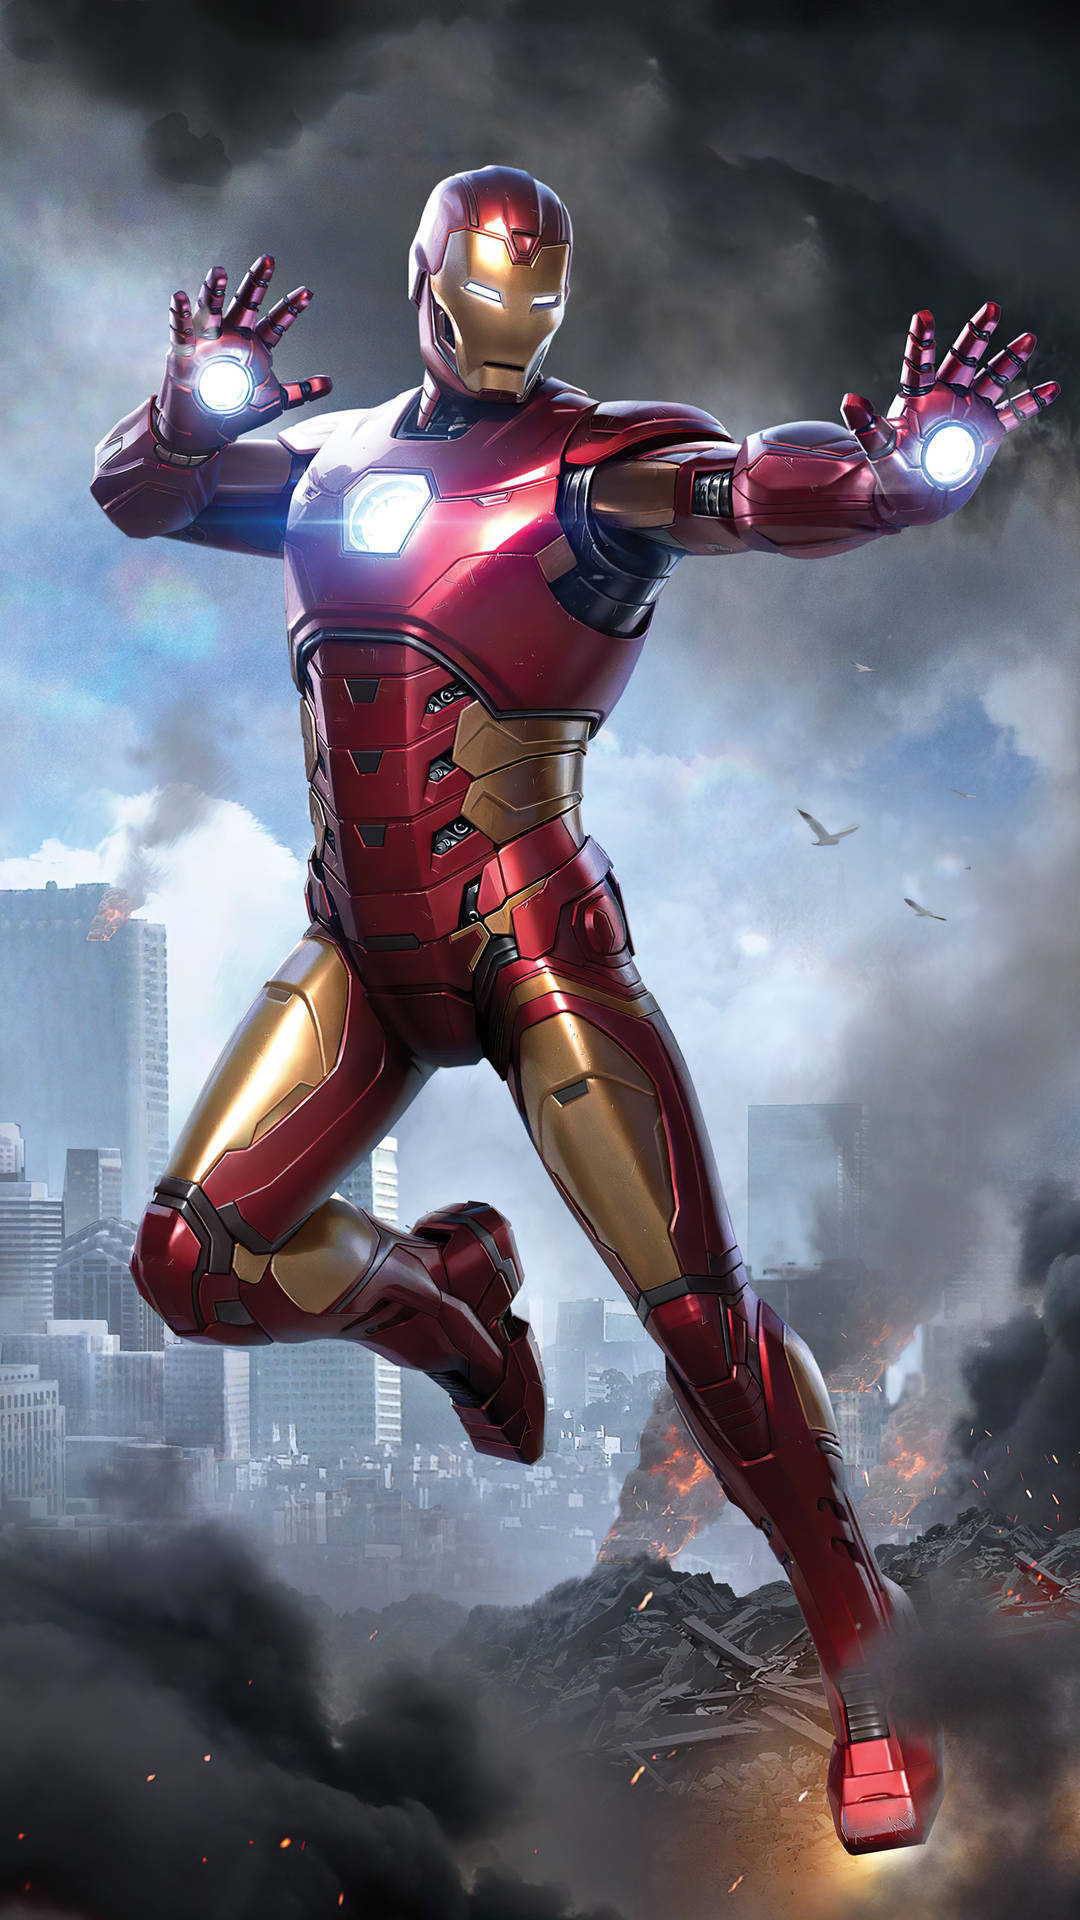 Marvel Avenger Iron Man Superhero Wallpaper